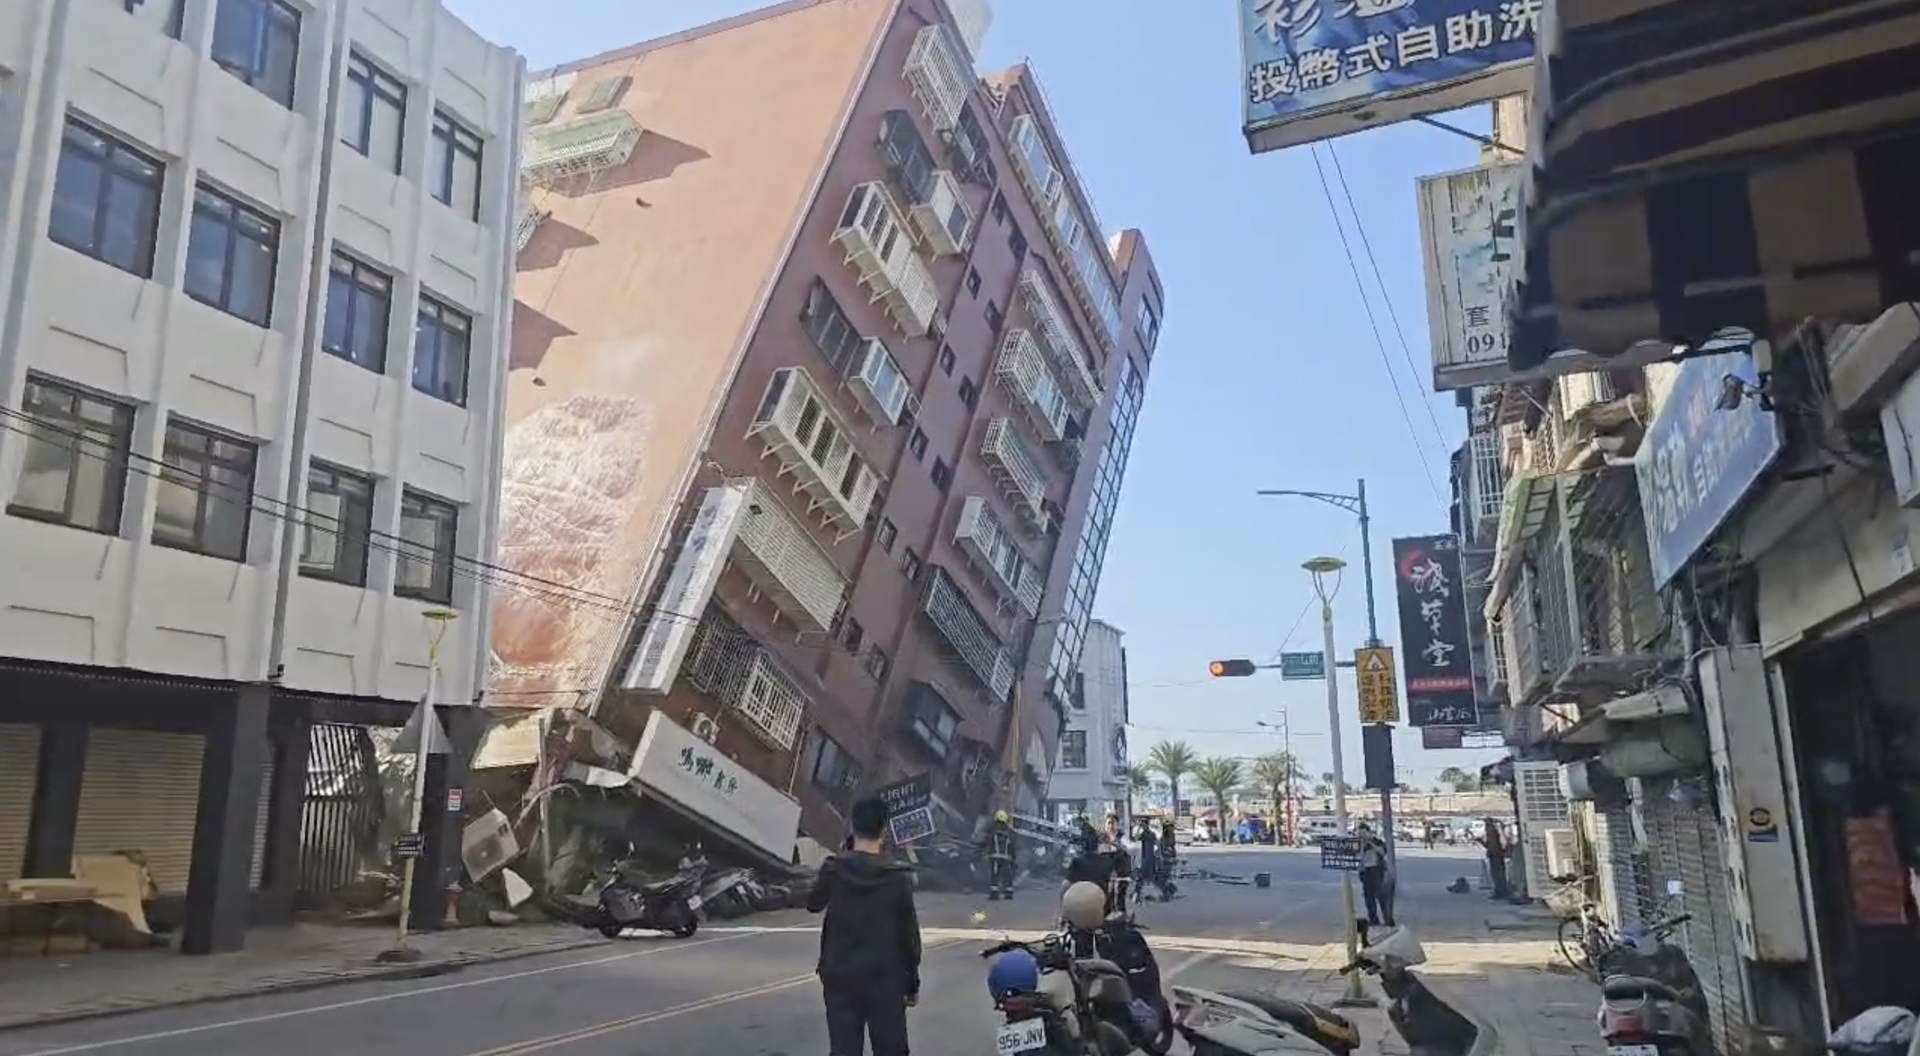 Imagens de destruição após o terremoto mais forte de Taiwan em 25 anos